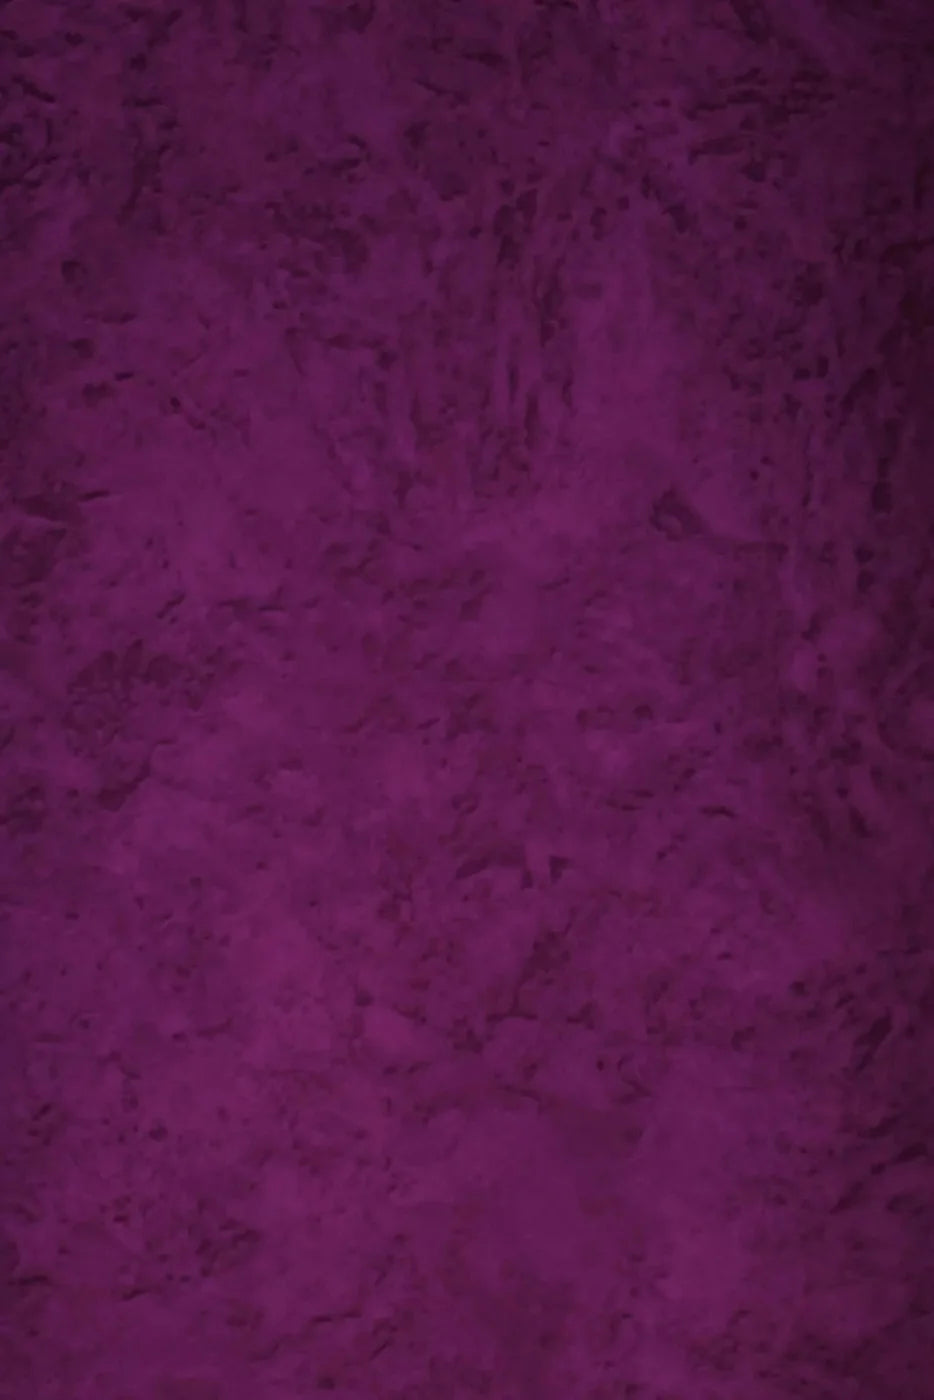 Barney 4X5 Rubbermat Floor ( 48 X 60 Inch ) Backdrop